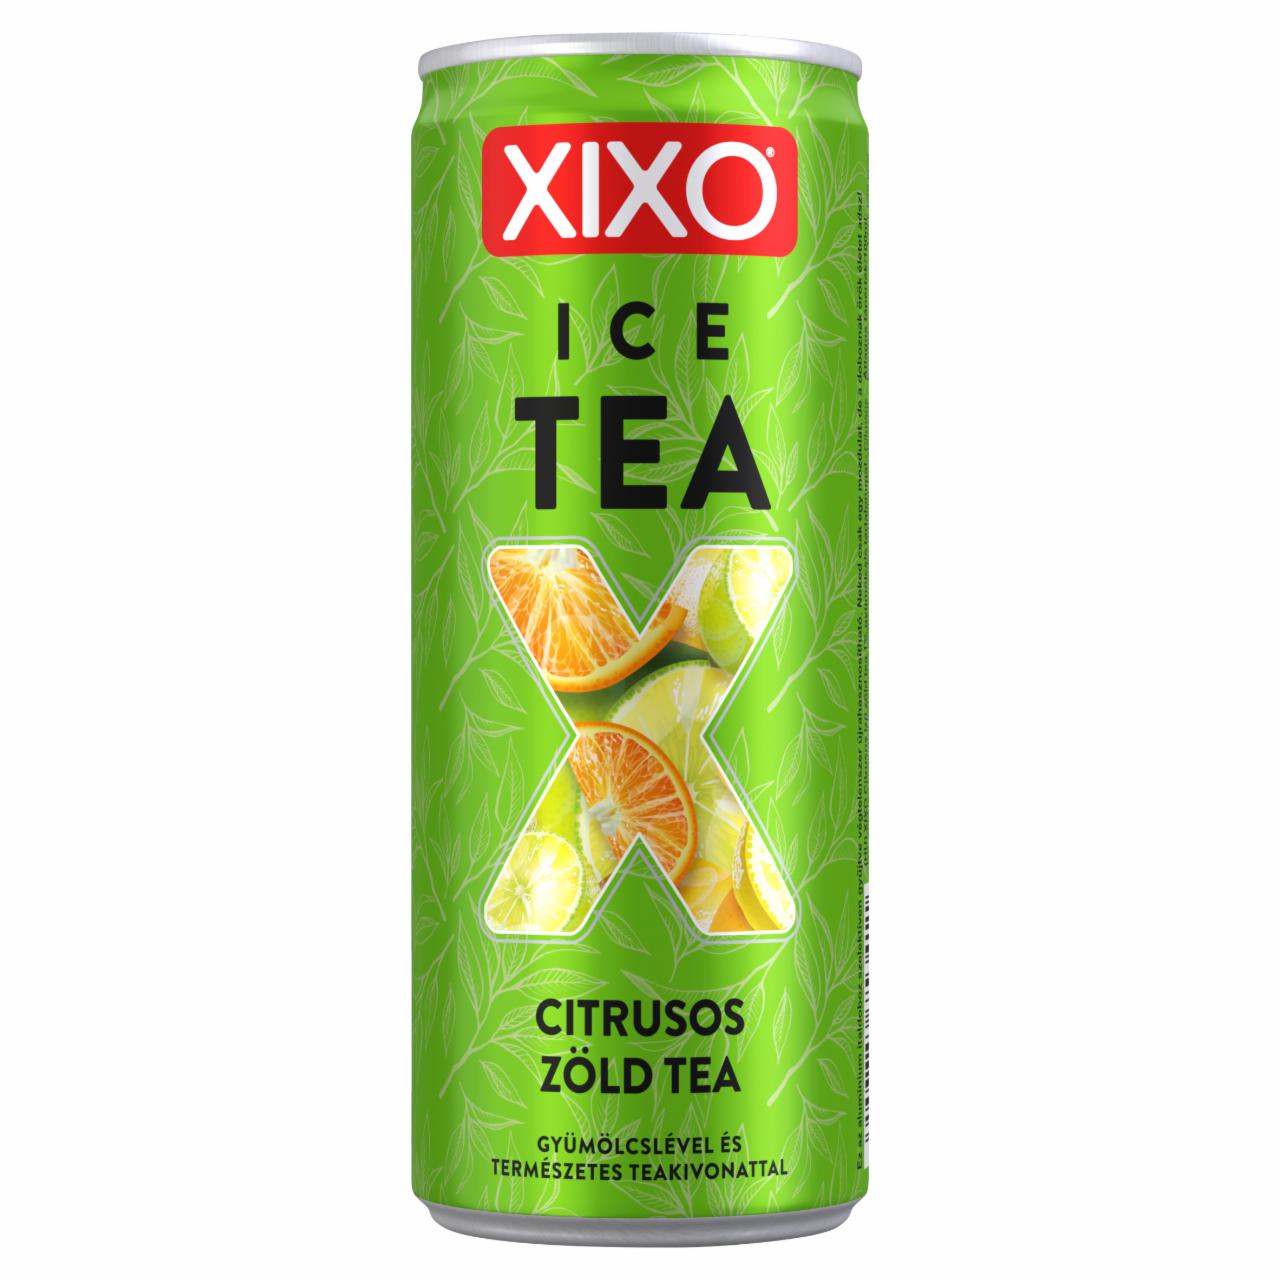 Képek - XIXO Ice Tea citrusos zöld tea 250 ml